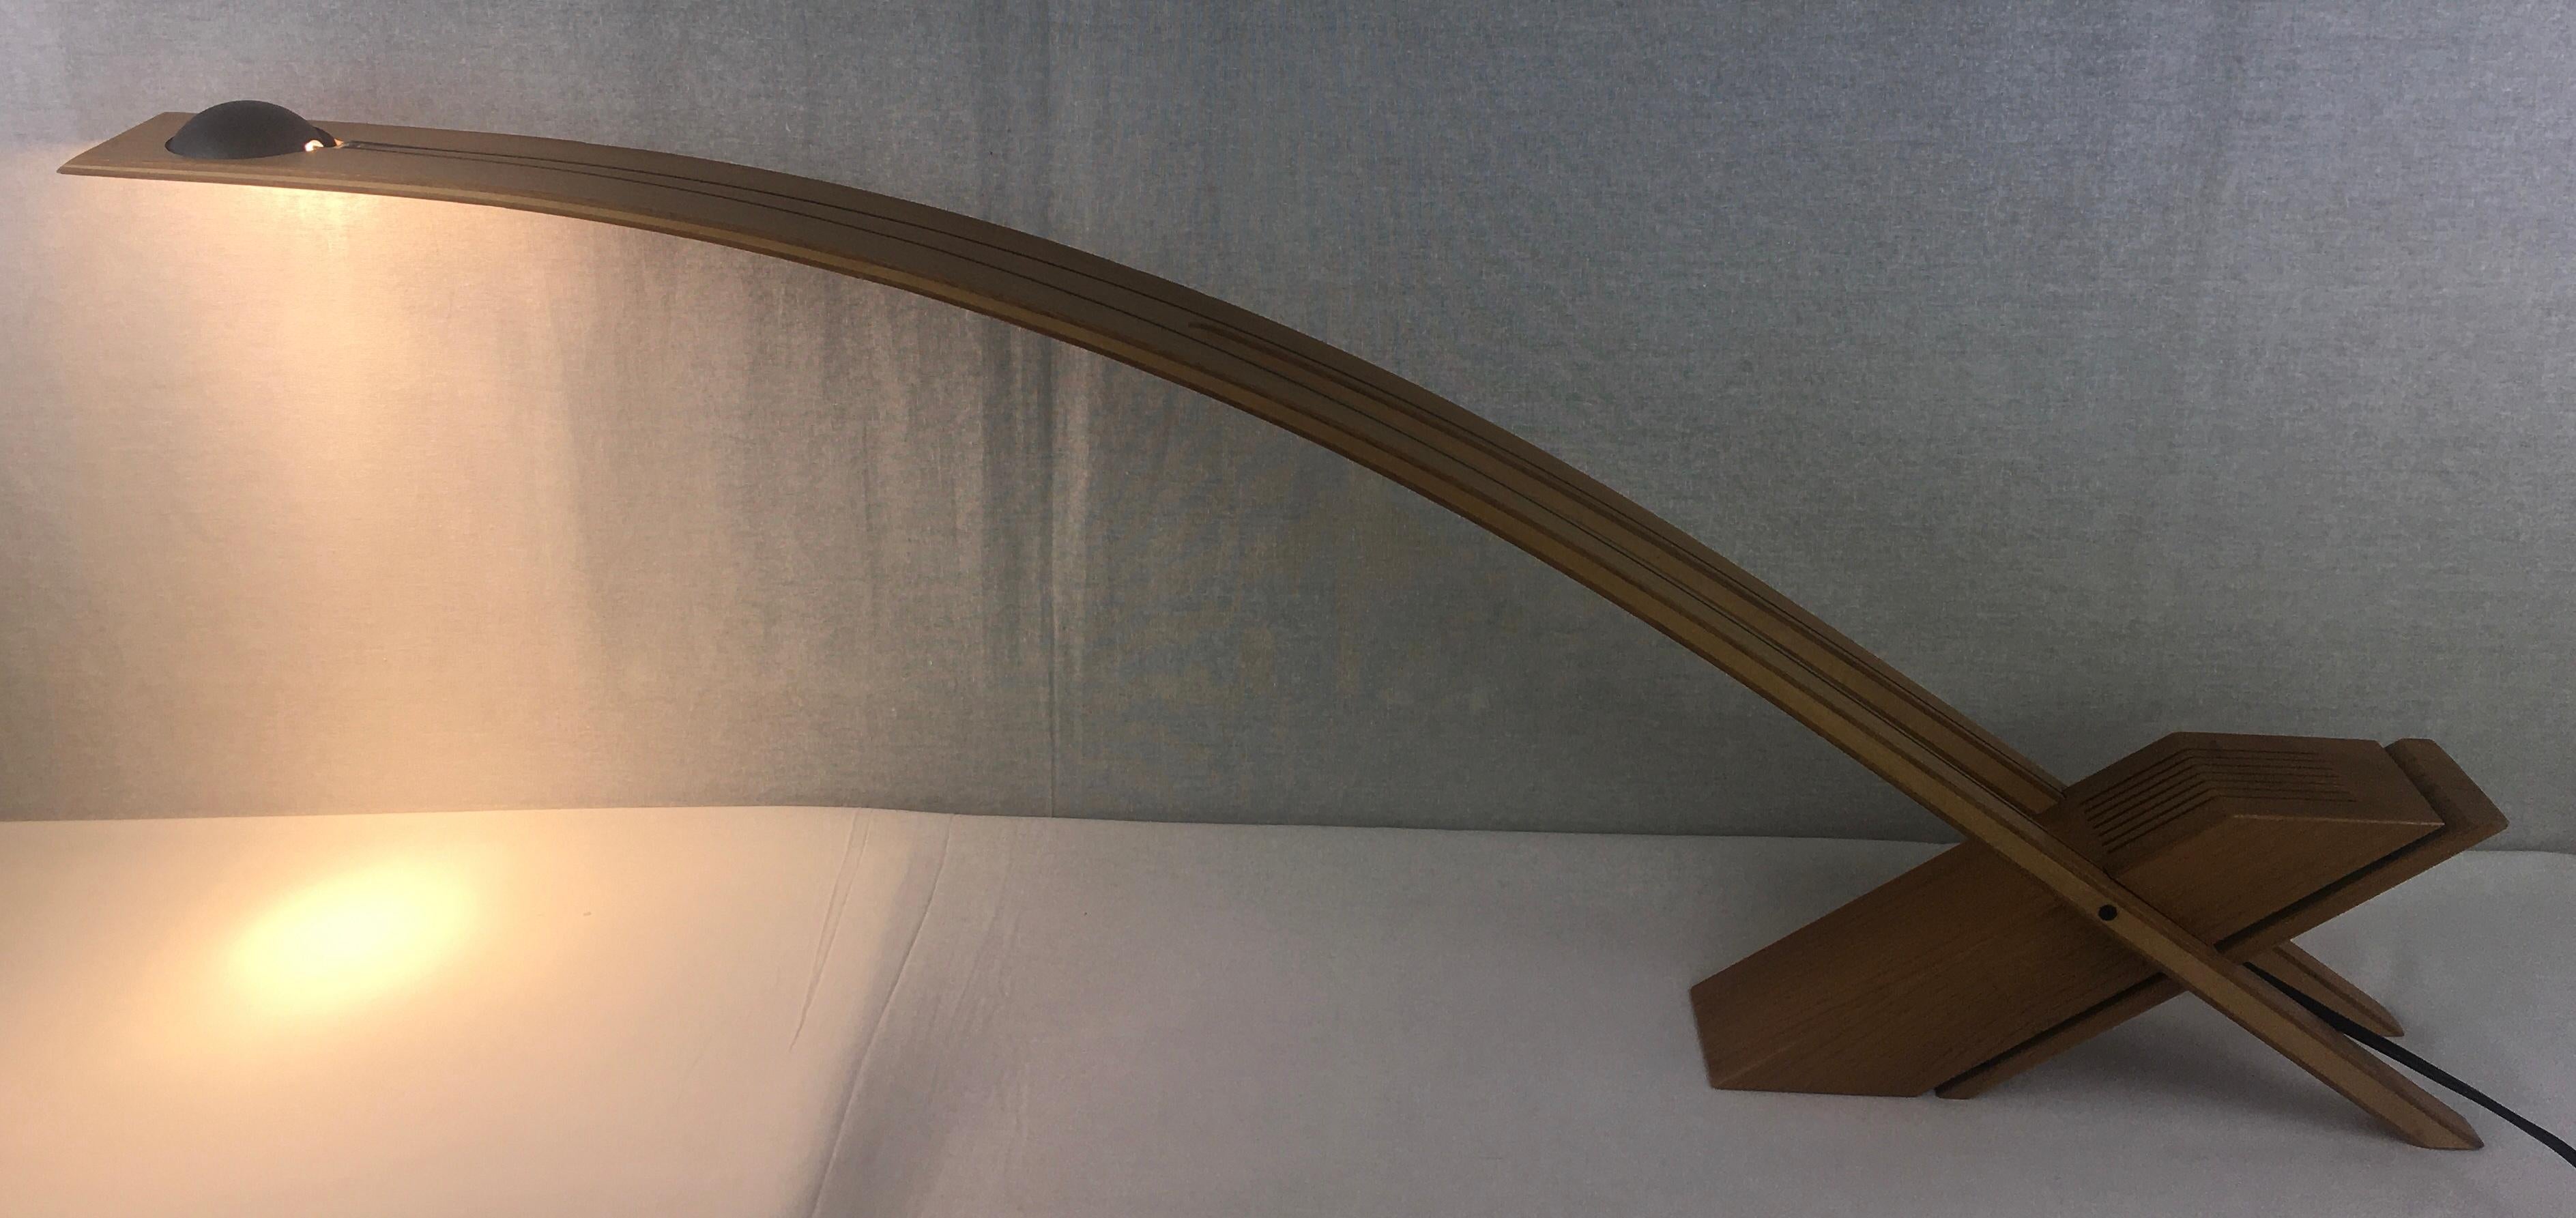 Une lampe de table ou de bureau très pratique à la forme moderne organique pure et au design très épuré, fabriquée en chêne massif et dont le bras est construit en bois d'ingénierie. 

Signé par l'artiste, inconnu.  La provenance est la France, mais